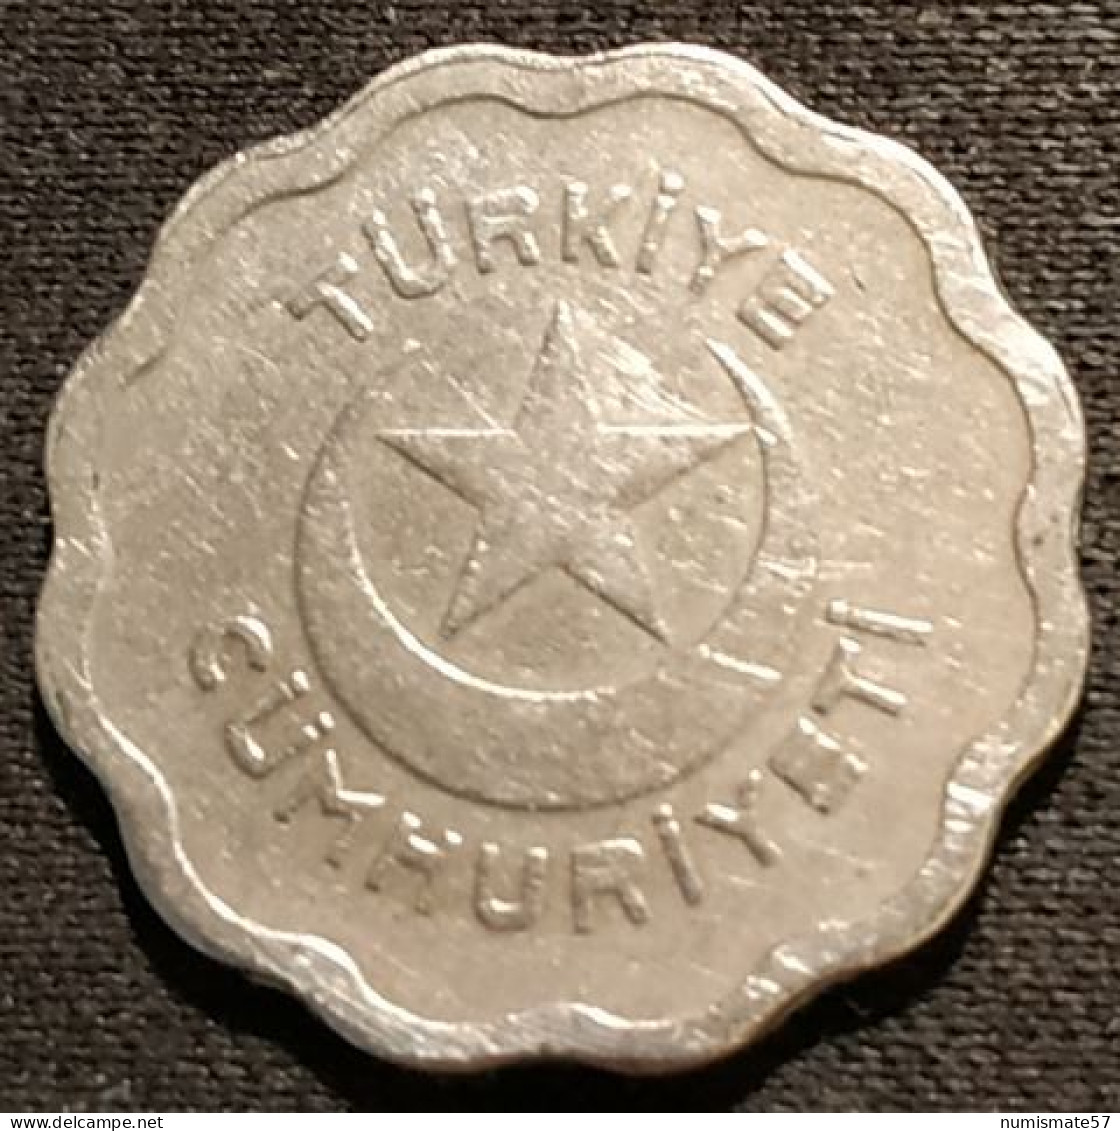 TURQUIE - TURKEY - 1 KURUS 1939 - KM 867 - Turkey